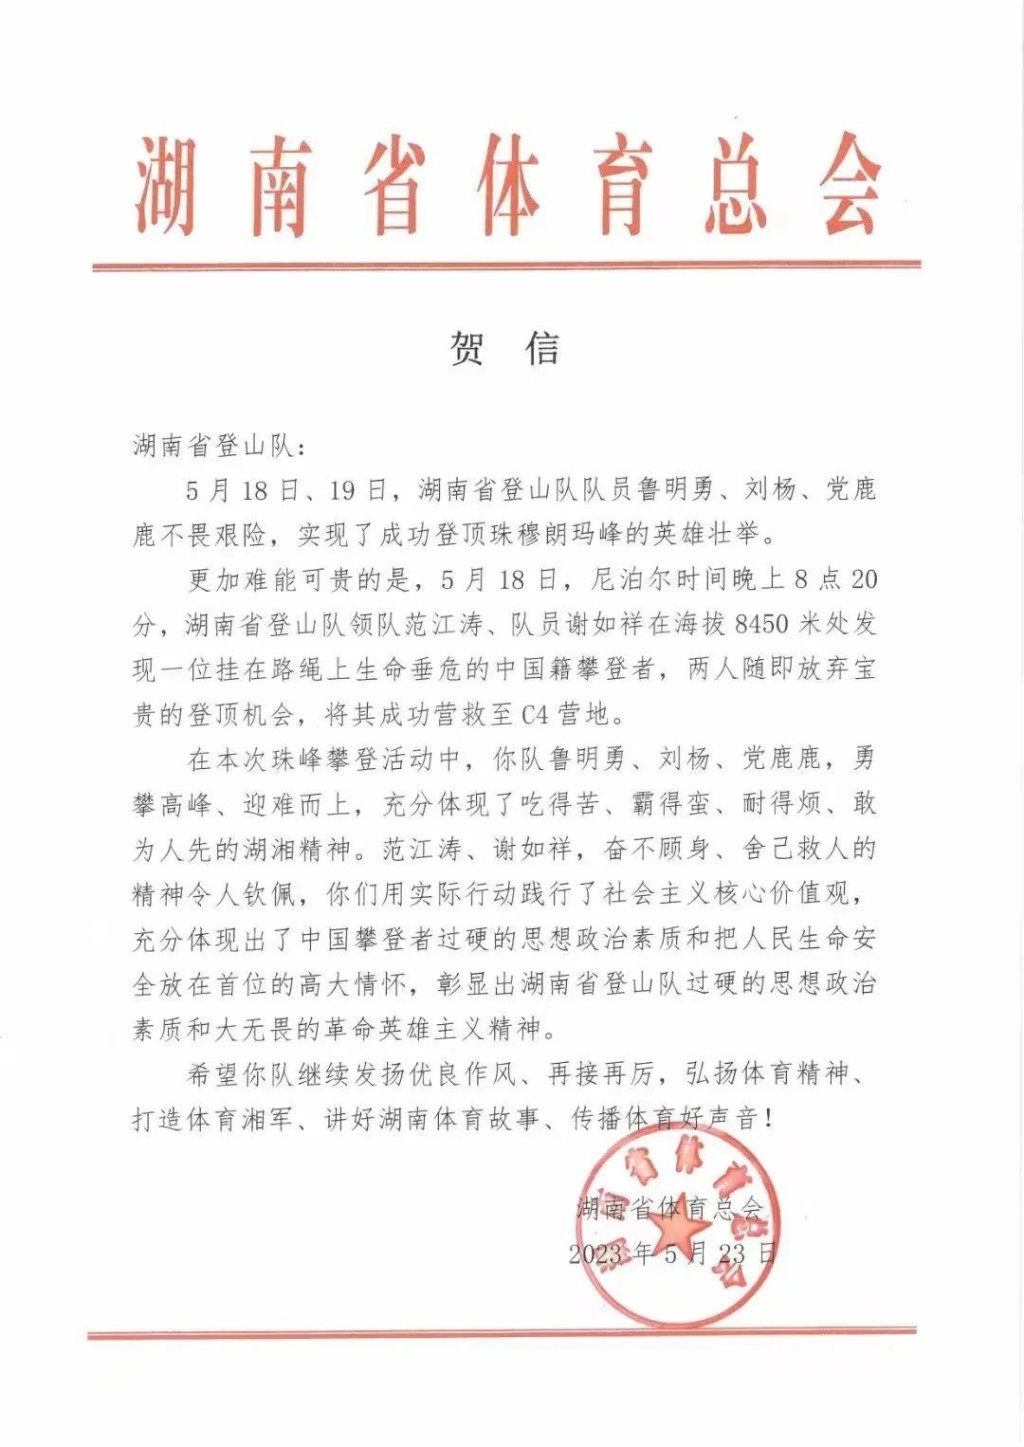 湖南省體育總會特別表彰兩名救人登山者。